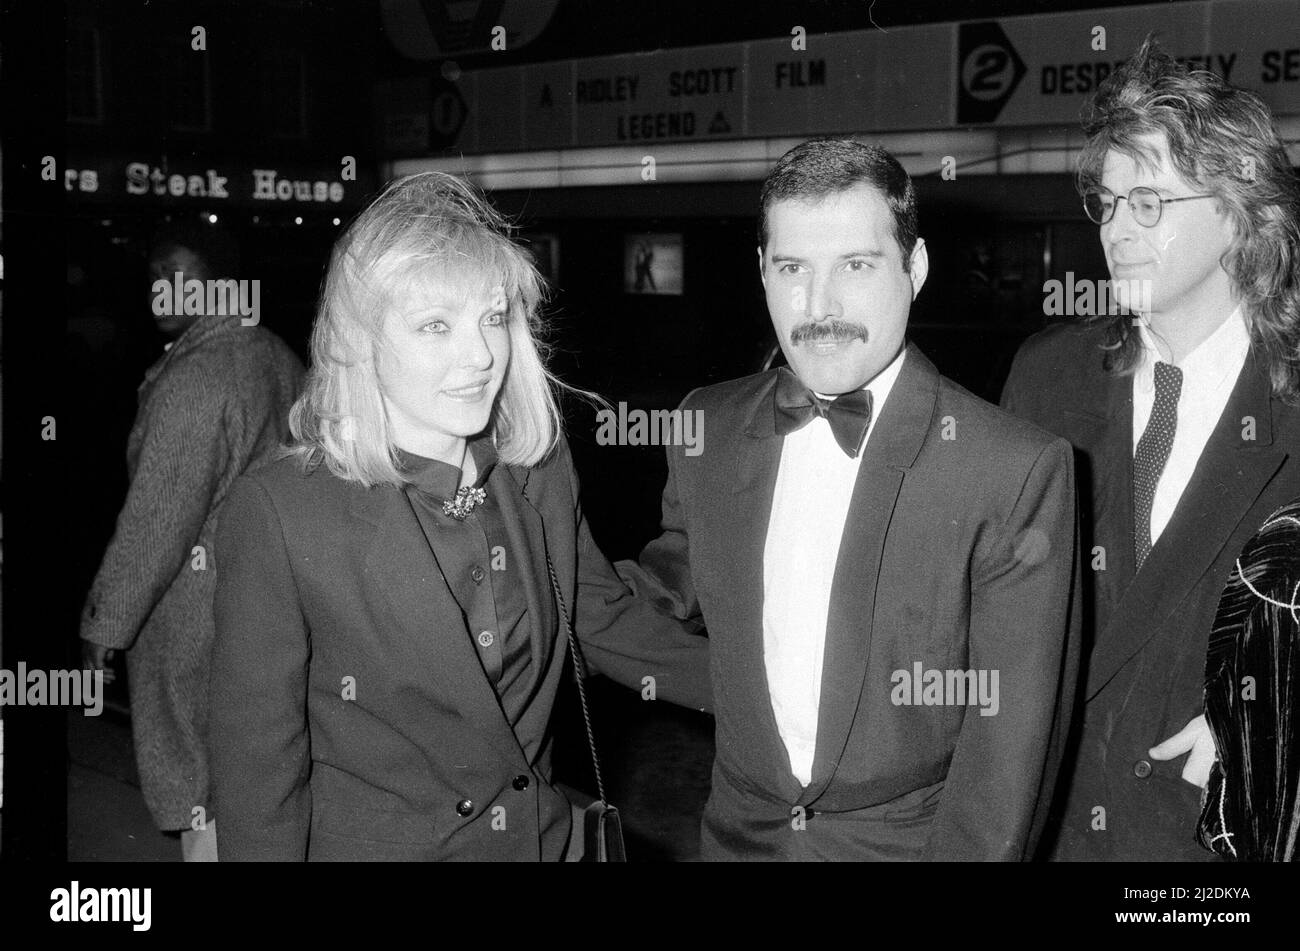 Instalar en pc prueba Comprimido Freddie Mercury y Mary Austin, Londres, 31st de enero de 1986. Mary Austin  es una amiga de larga data y ex socia de Freddie Mercury. Foto tomada el  31st de enero de